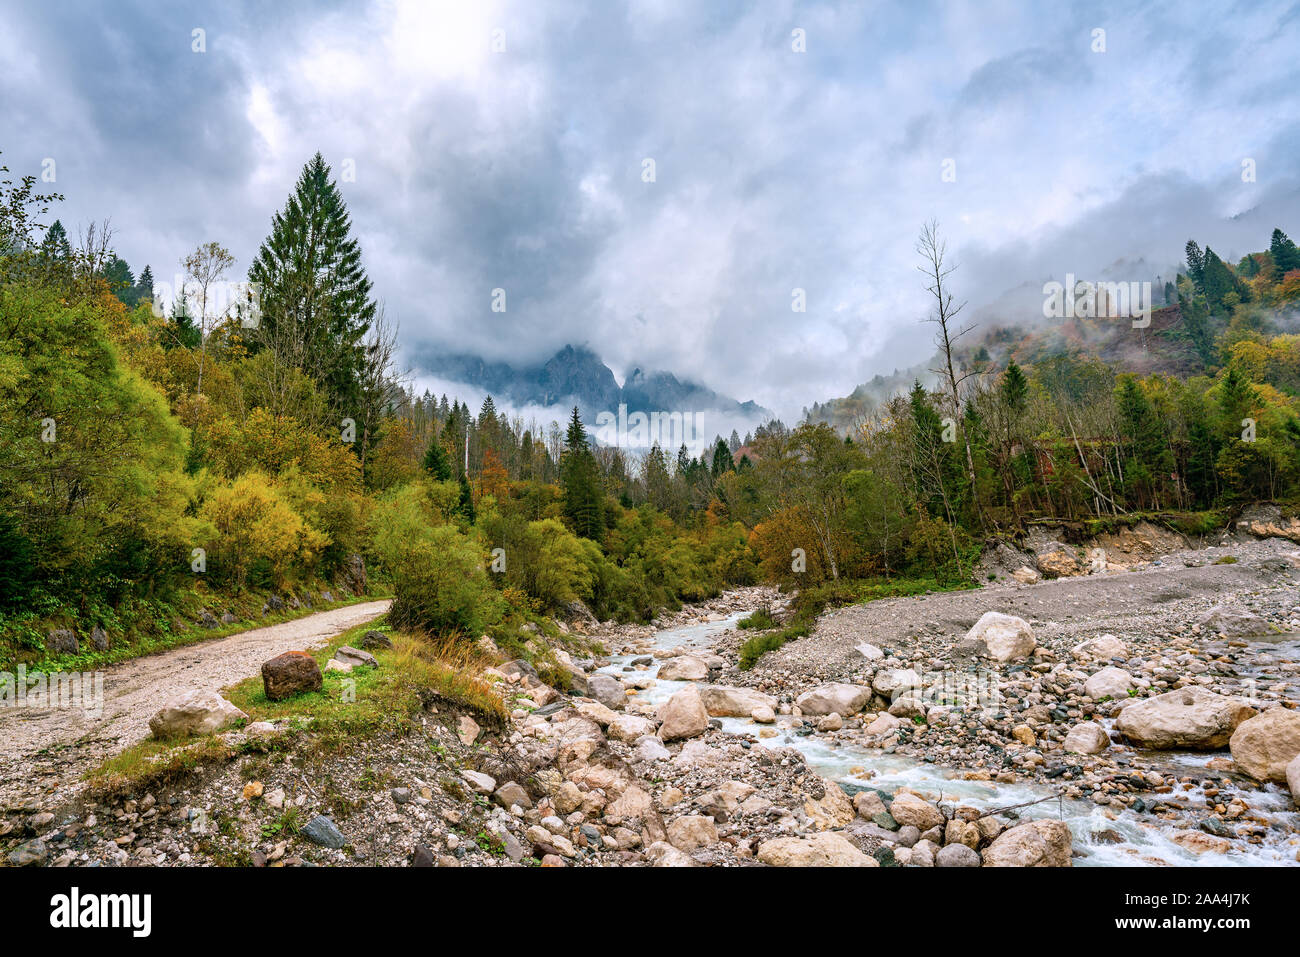 Vista panorámica del río Torrente Mis cerca de California (Gosaldo) en Italia con poca agua en otoño Foto de stock